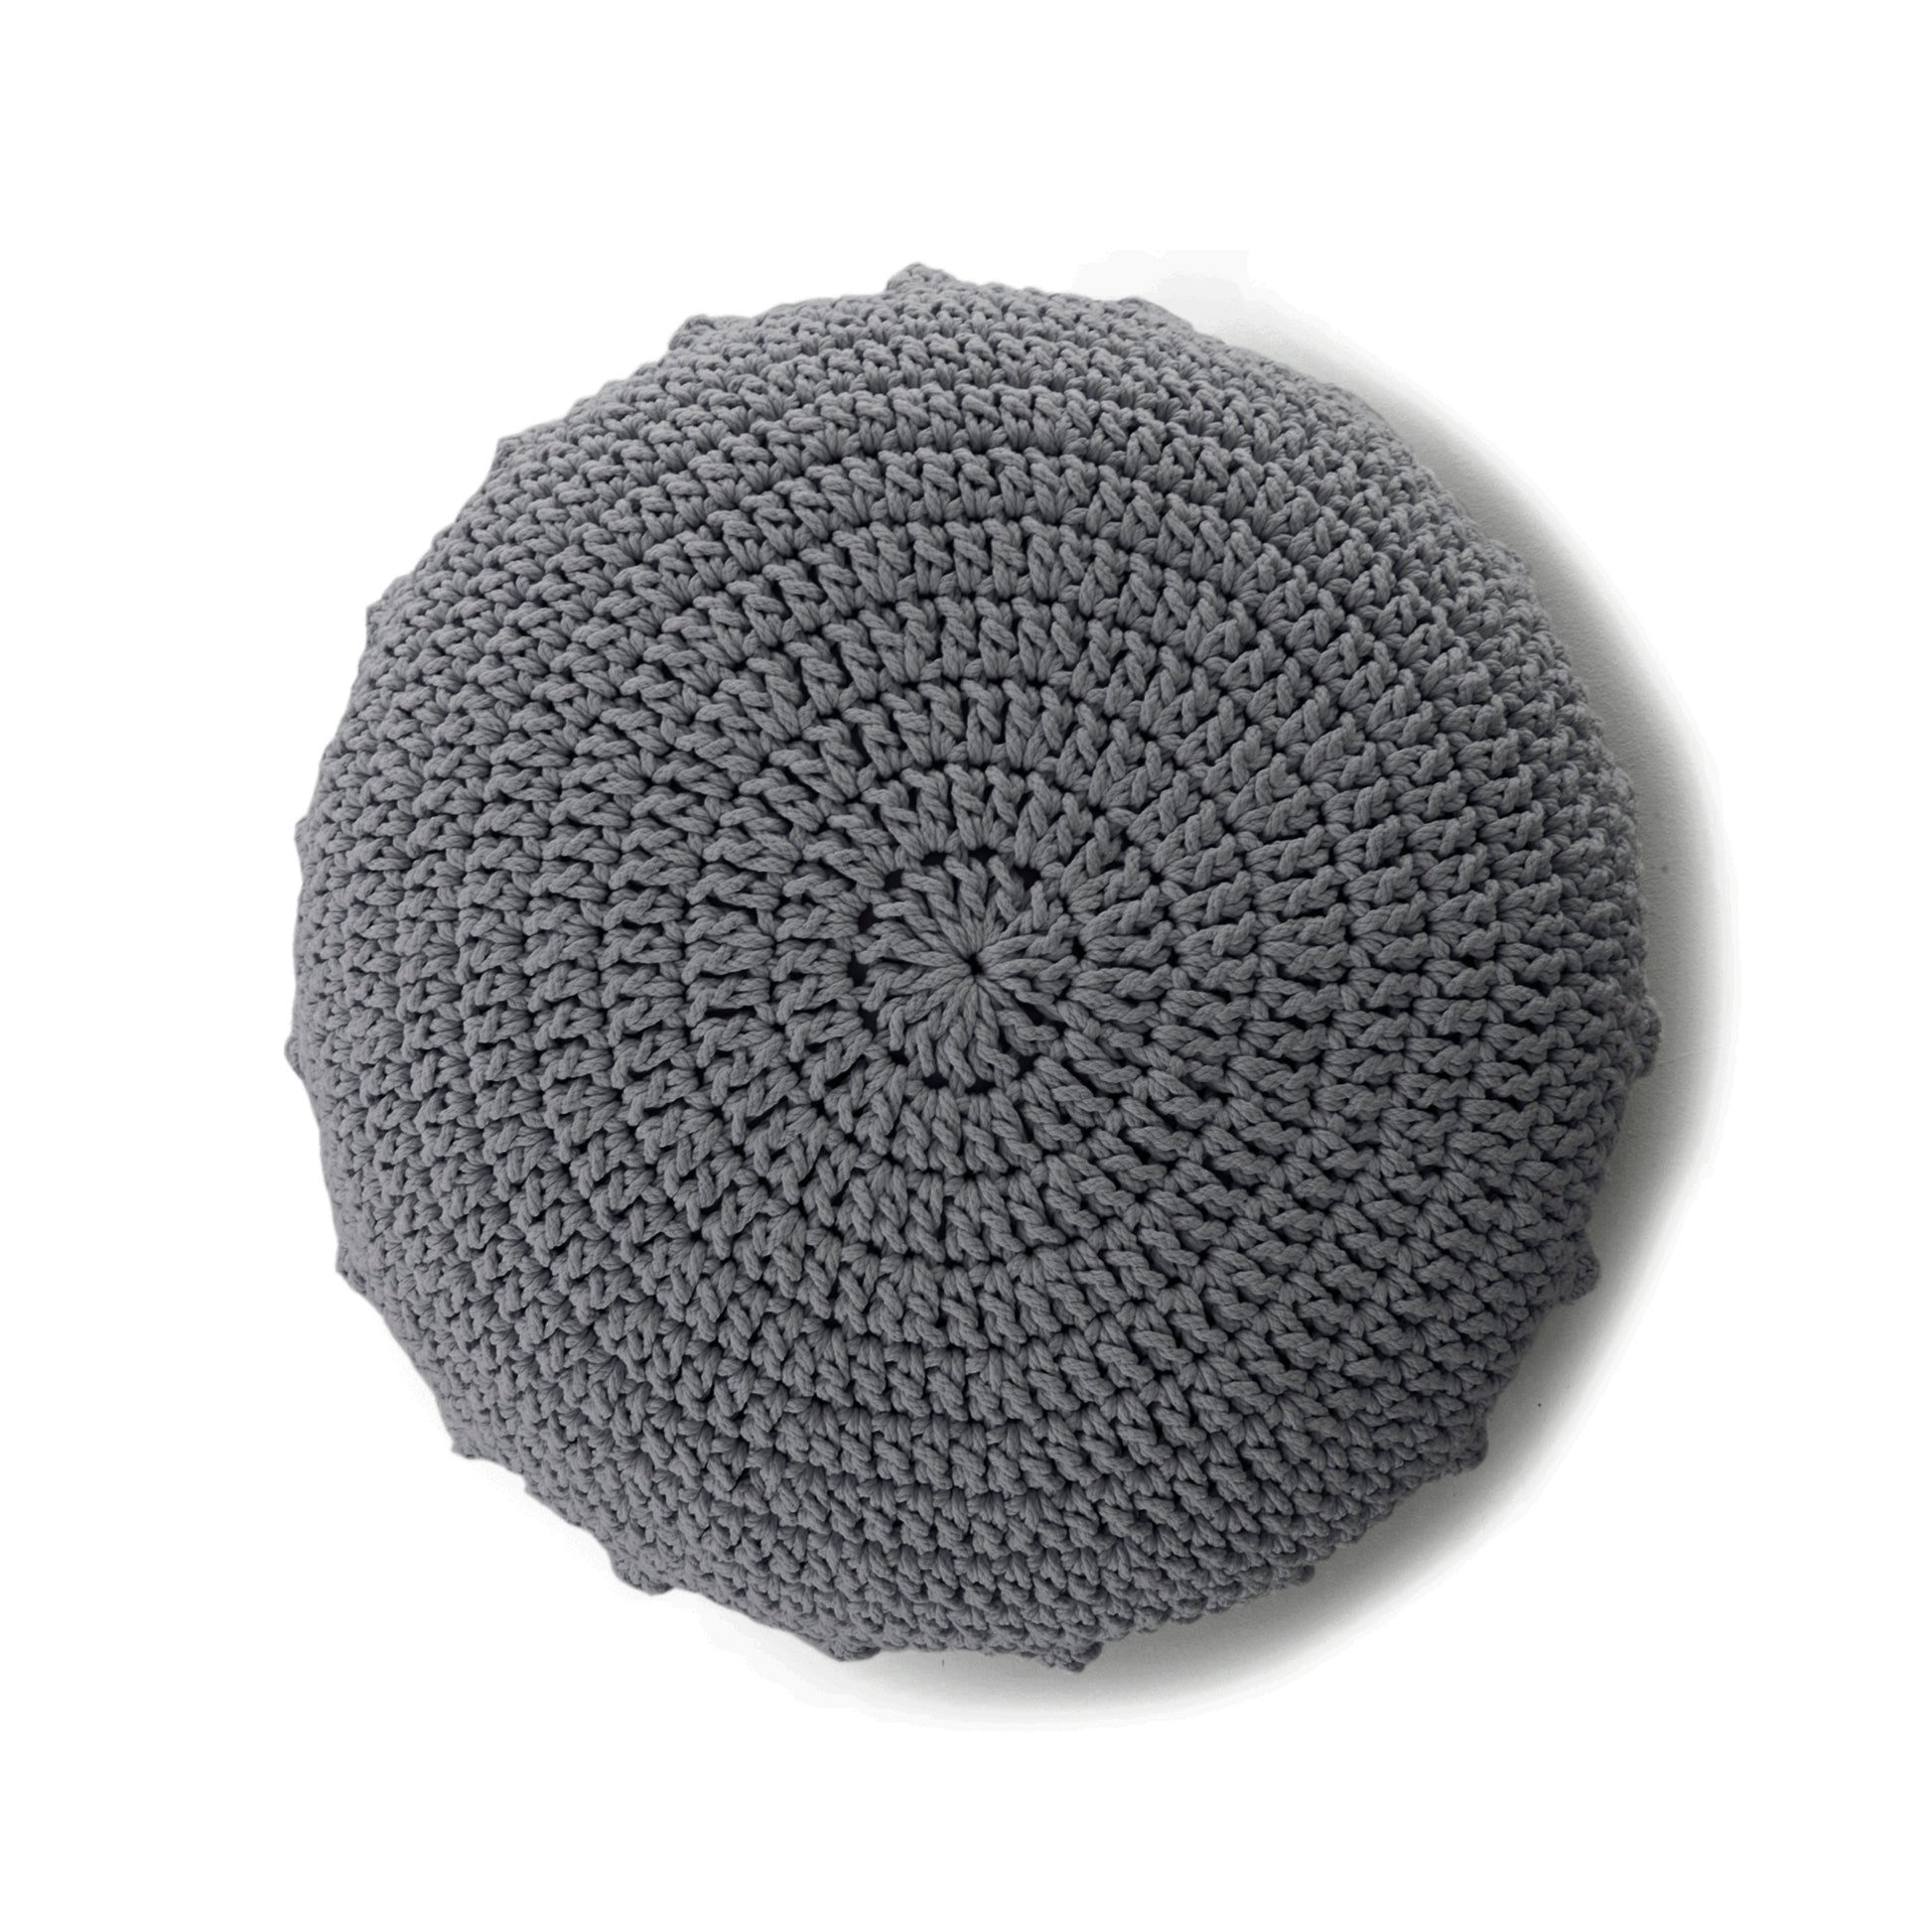 Puff Disco em crochê Cinza, com fio 100% algodão.  Fechamento com zíper, possibilitando a remoção da capa para lavagem.  Dimensões: Altura - 20cm; Diâmetro - 85cm. 